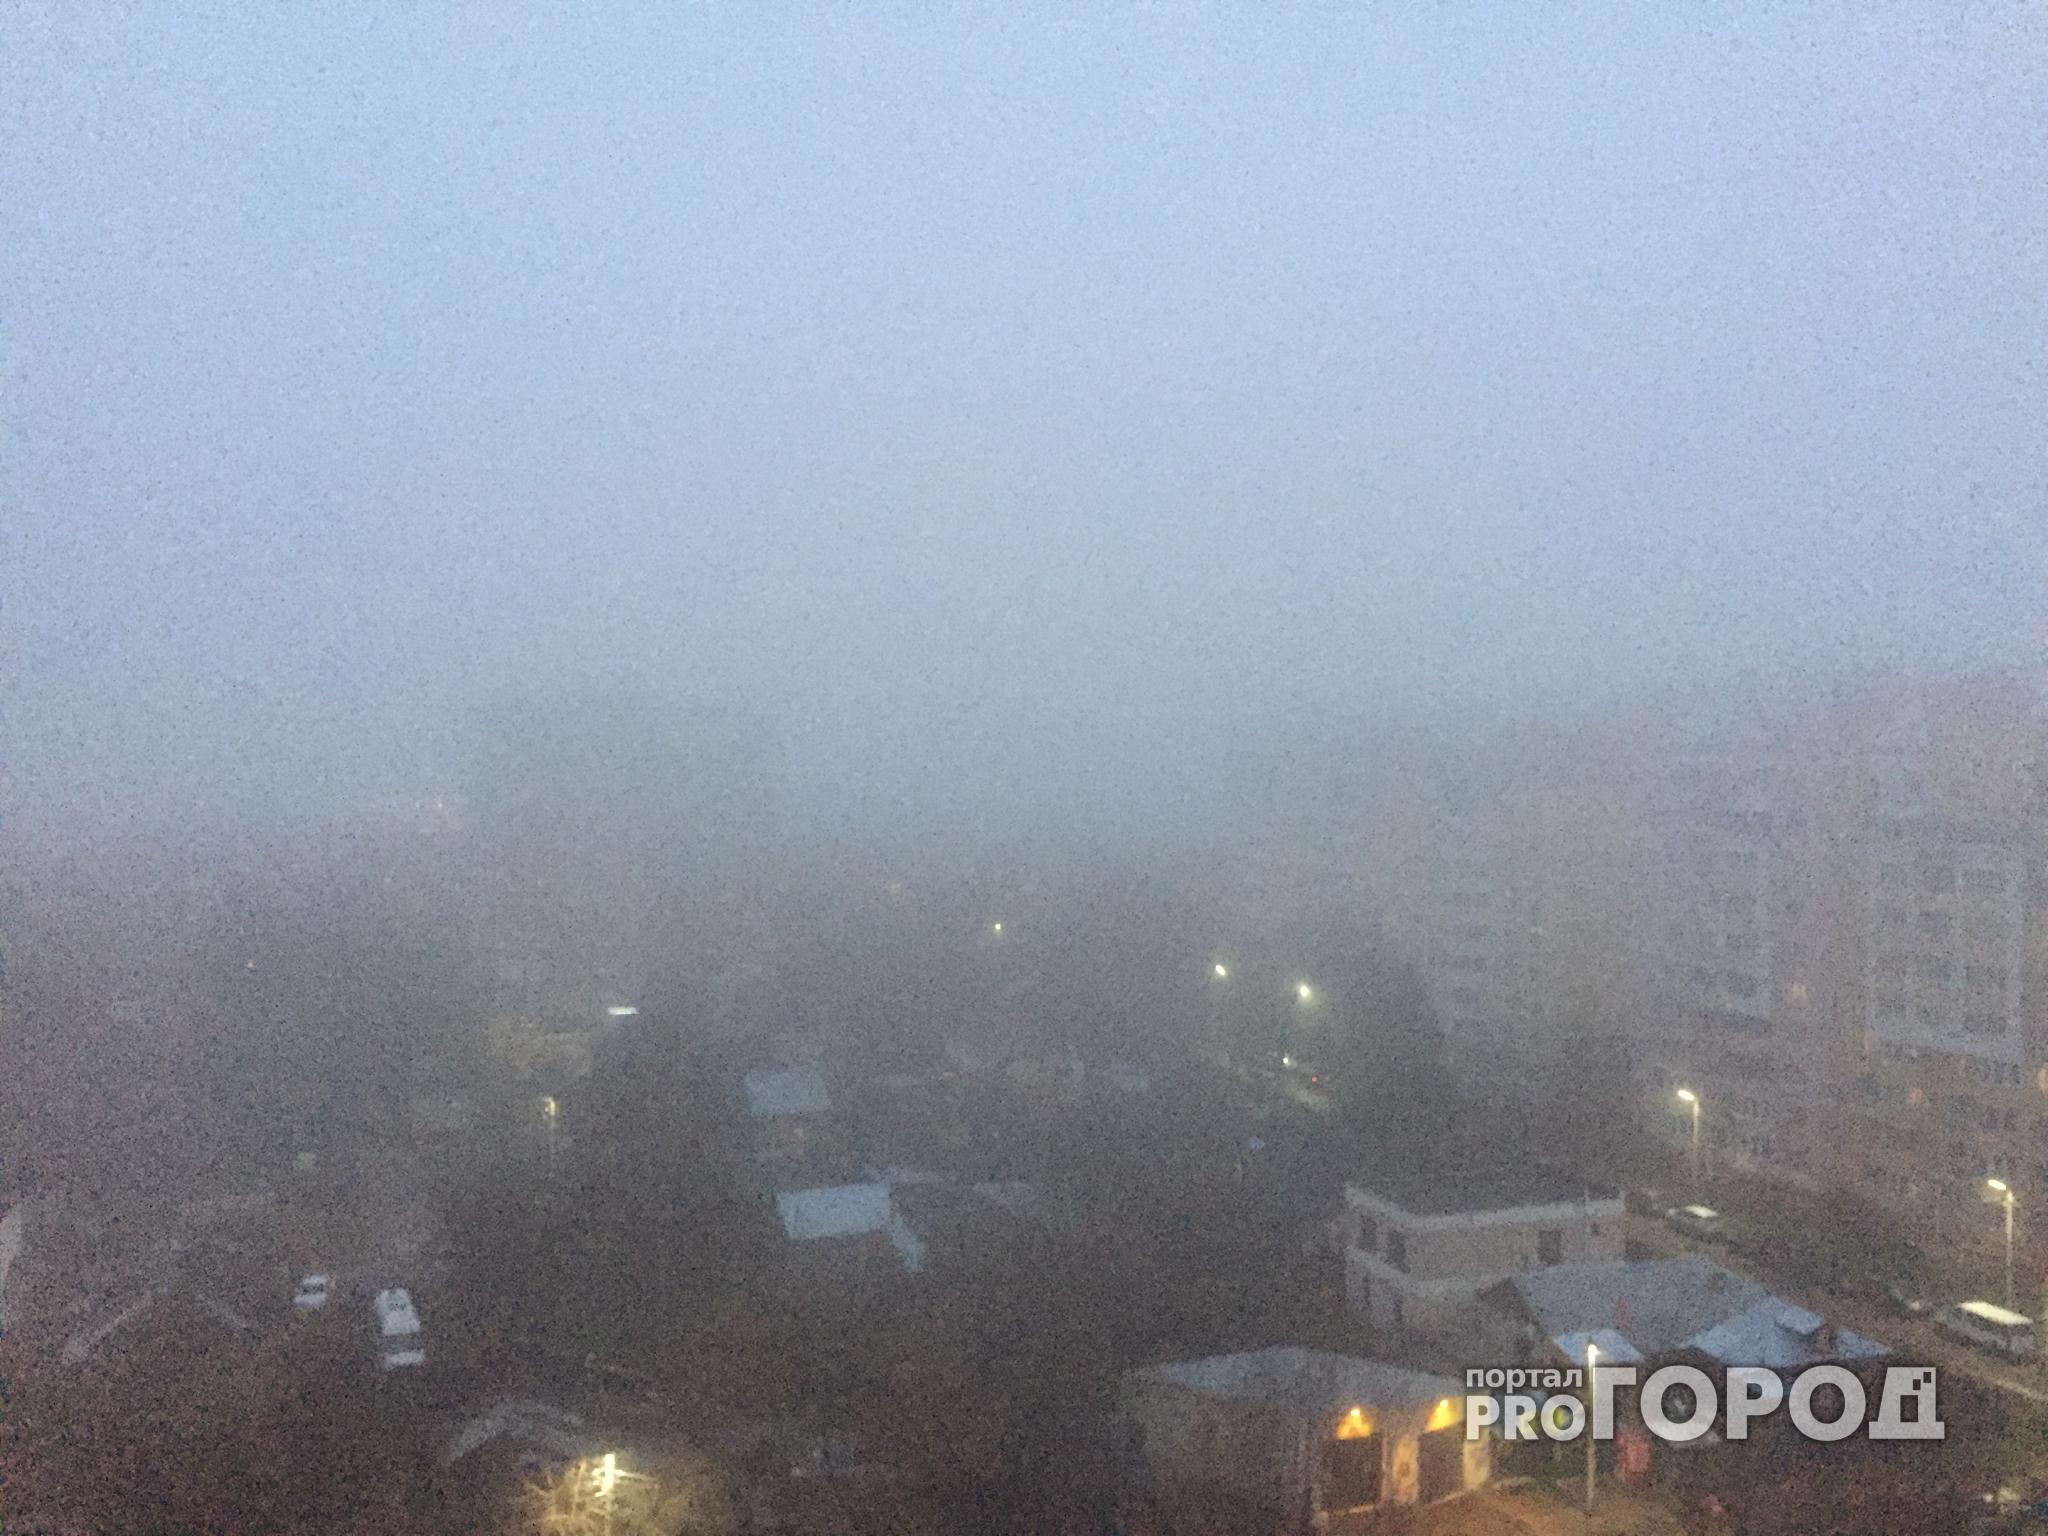 Метеопредупреждение: в ближайшие часы в Рязанской области ожидается туман